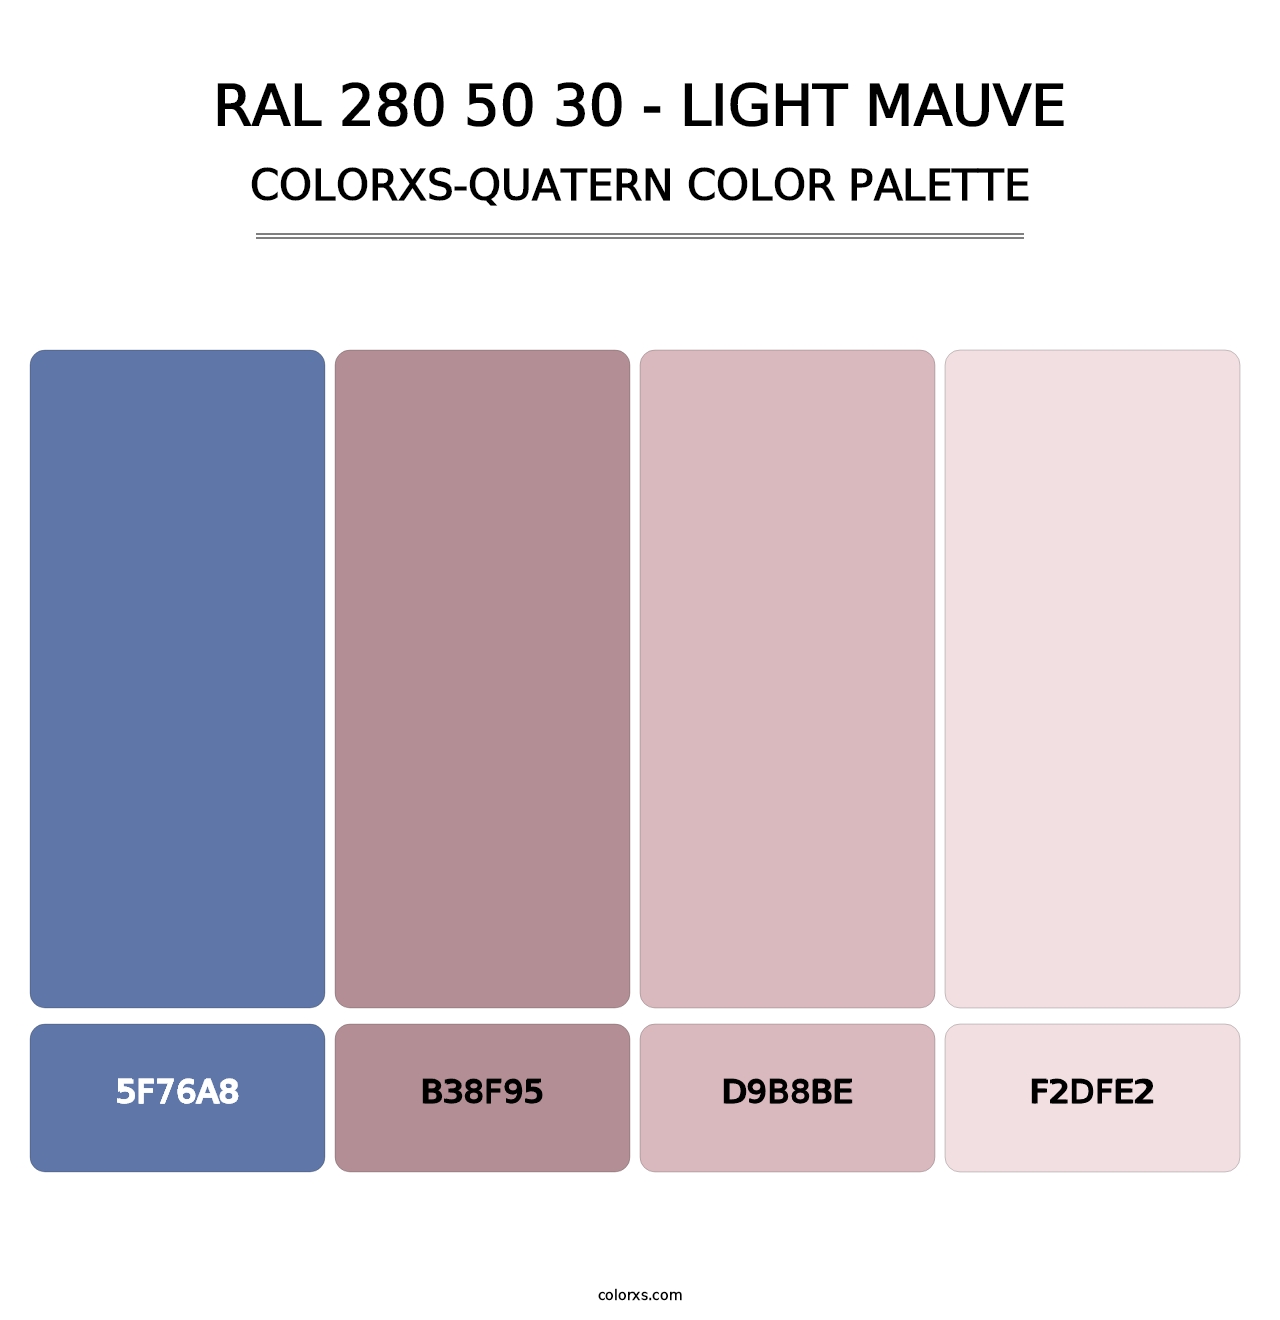 RAL 280 50 30 - Light Mauve - Colorxs Quatern Palette